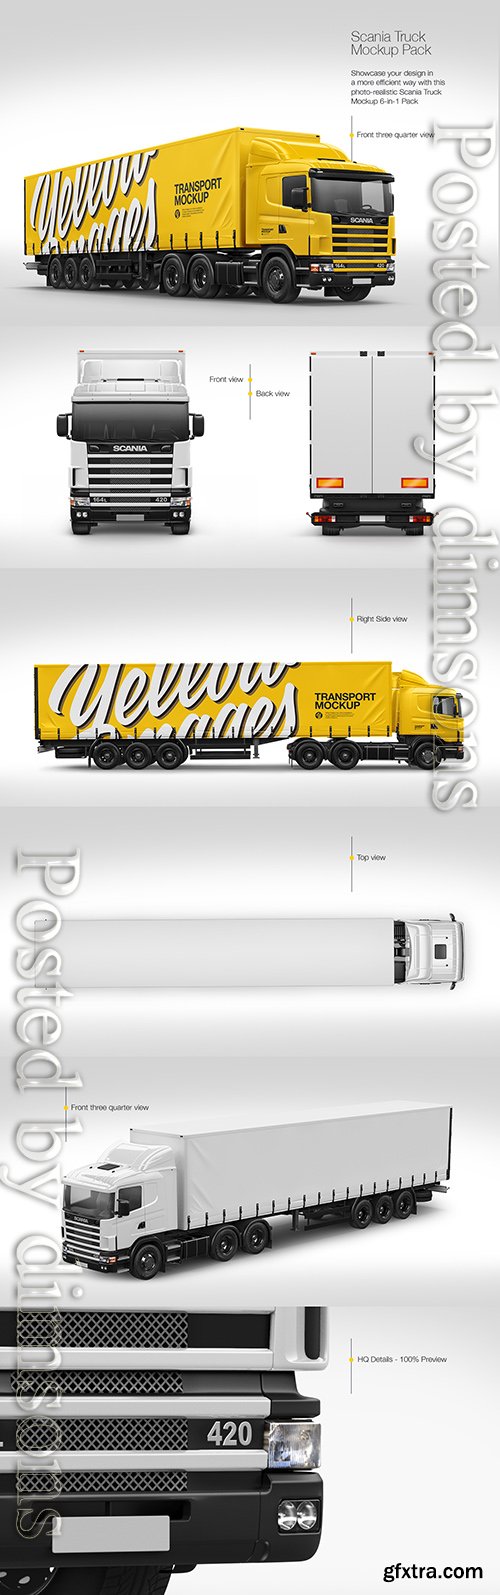 Scania Truck Mockup Pack